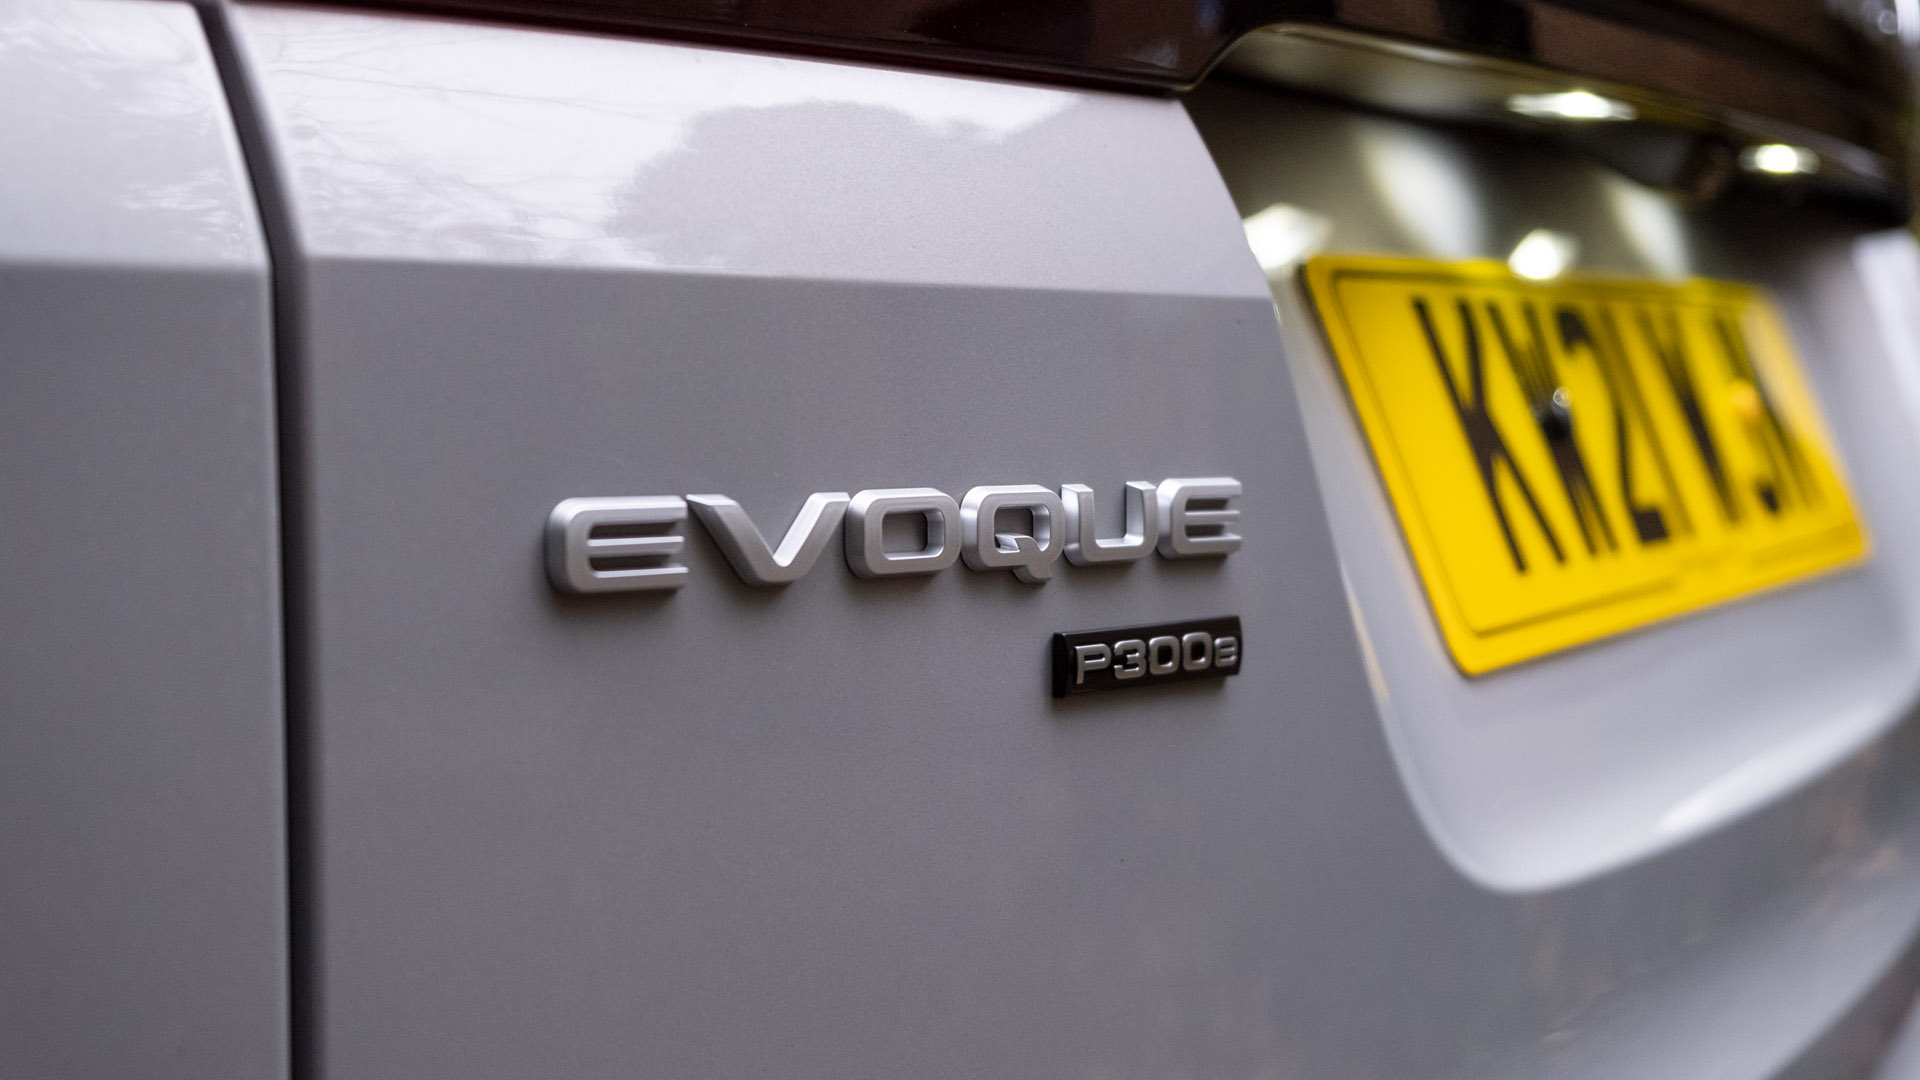 Range Rover Evoque P300e badge